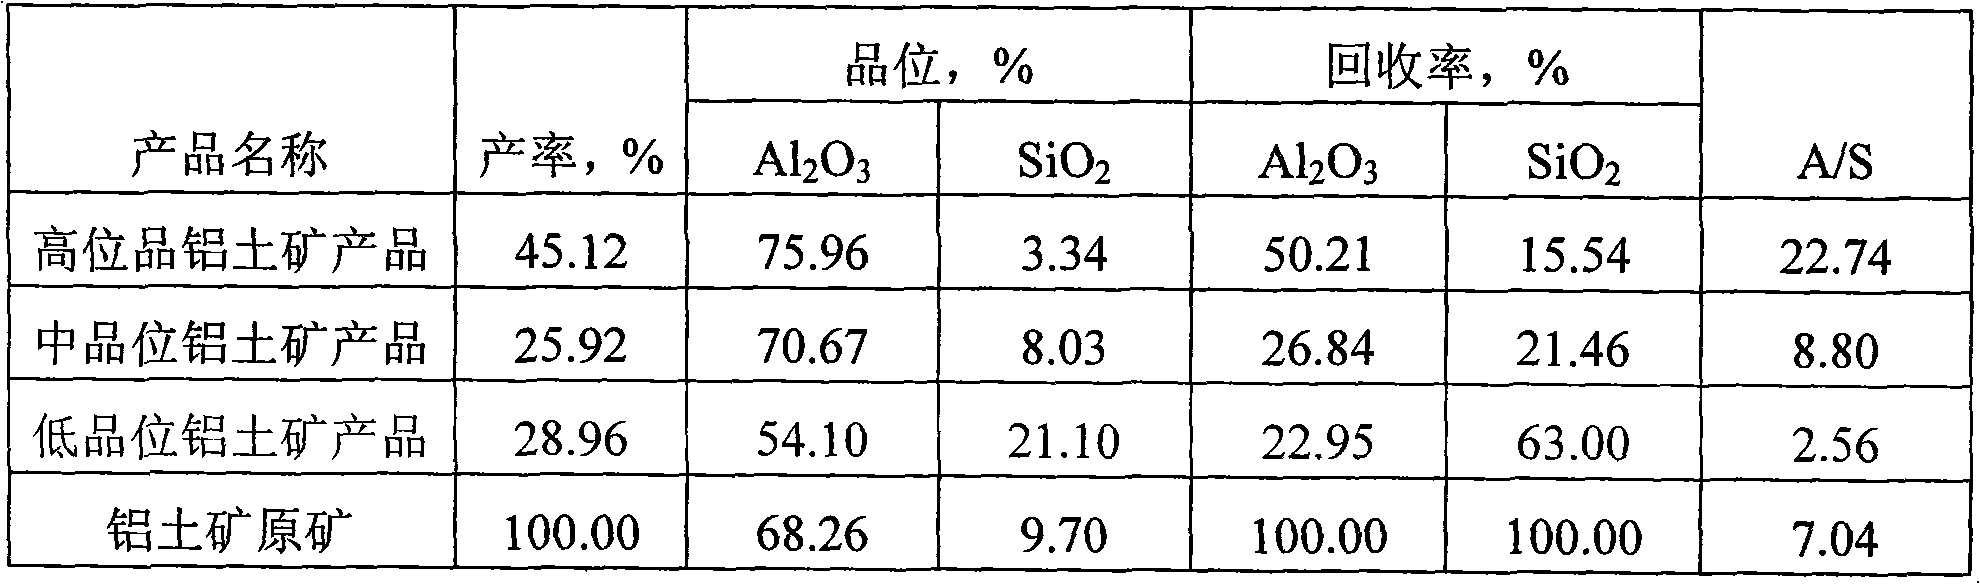 Beneficiating method of diaspore type bauxite